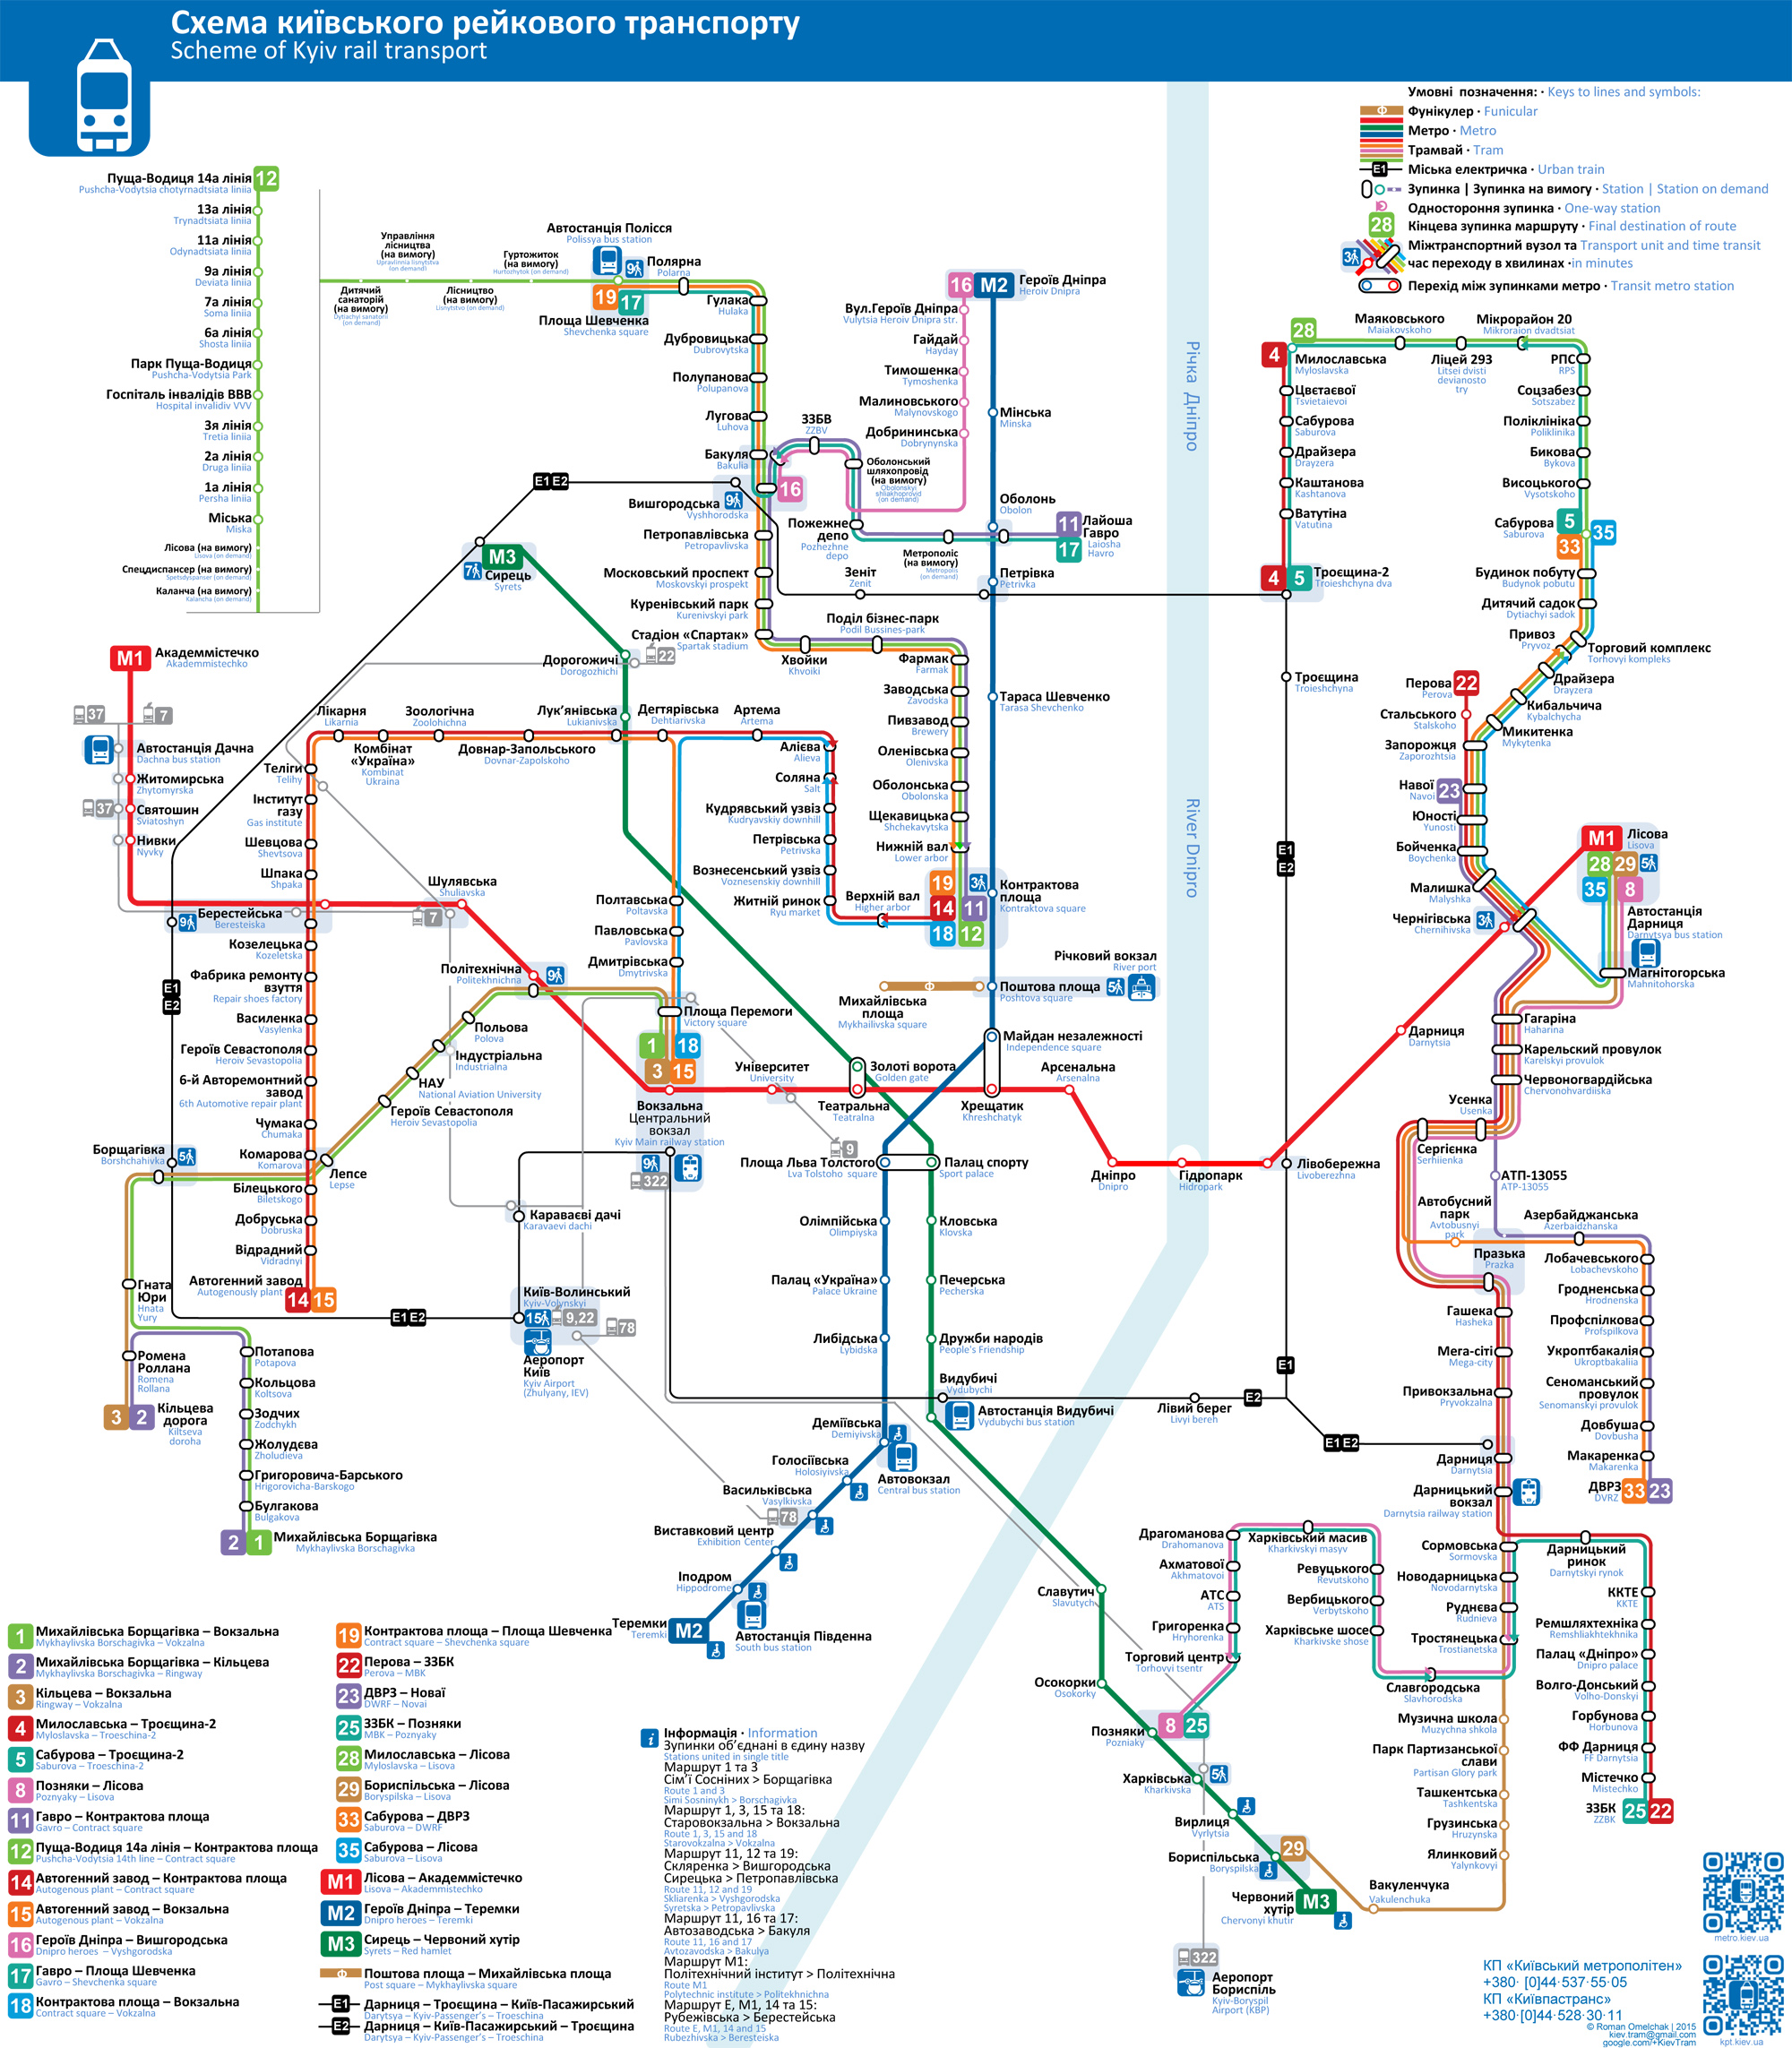 Kijevas — System-wide maps